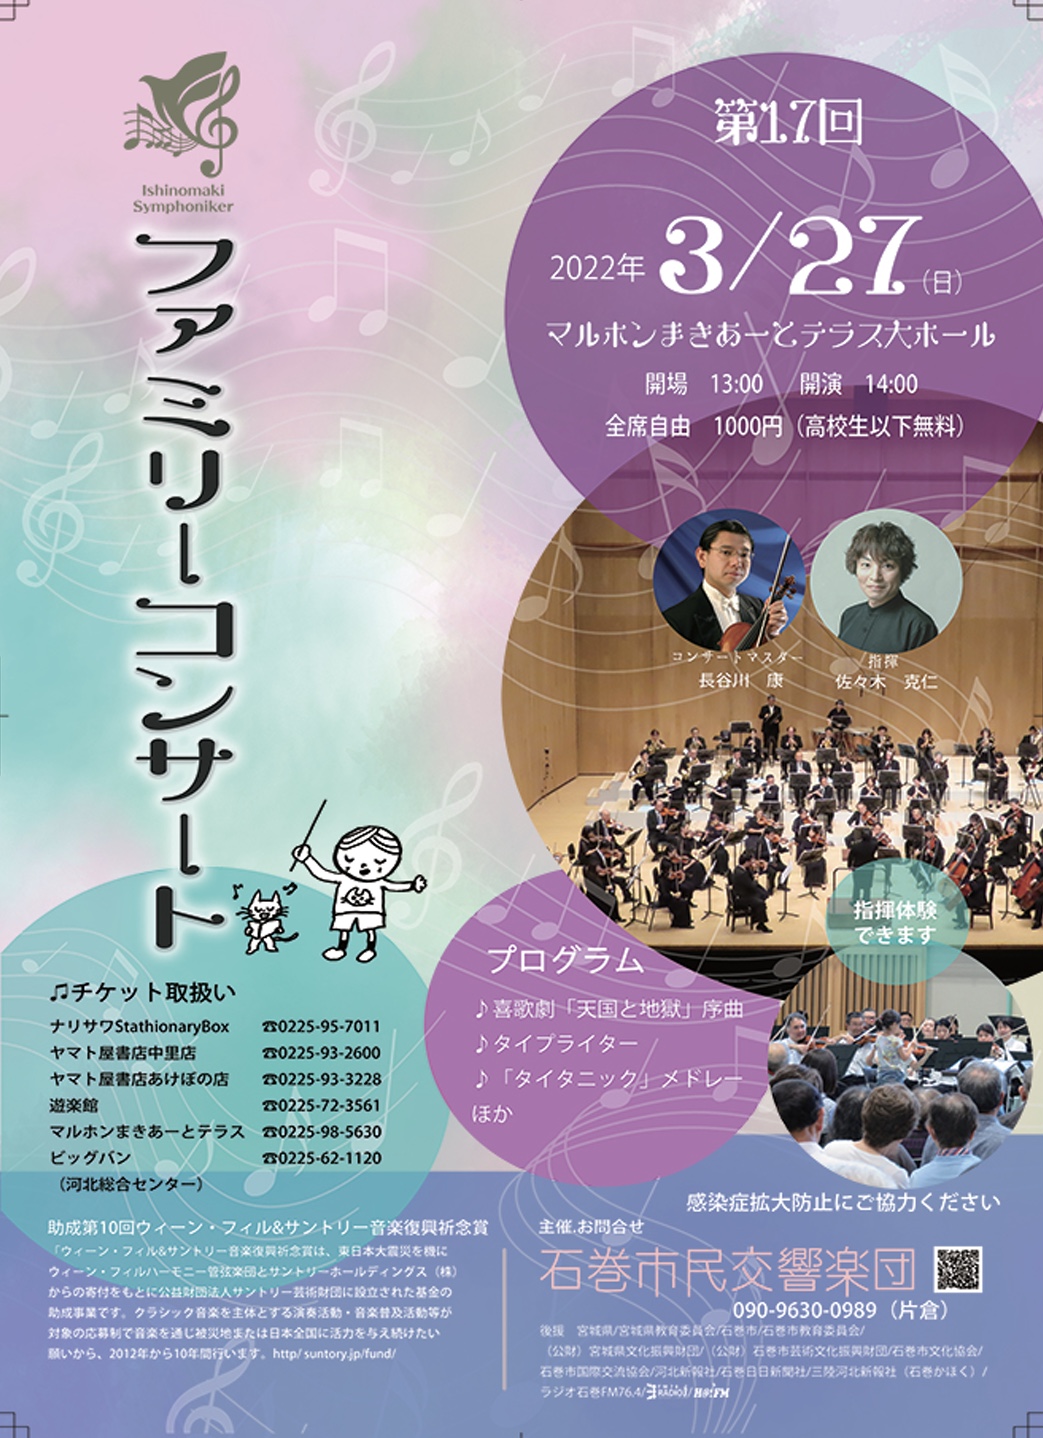 石巻市民交響楽団第17回ファミリーコンサートのフライヤー画像